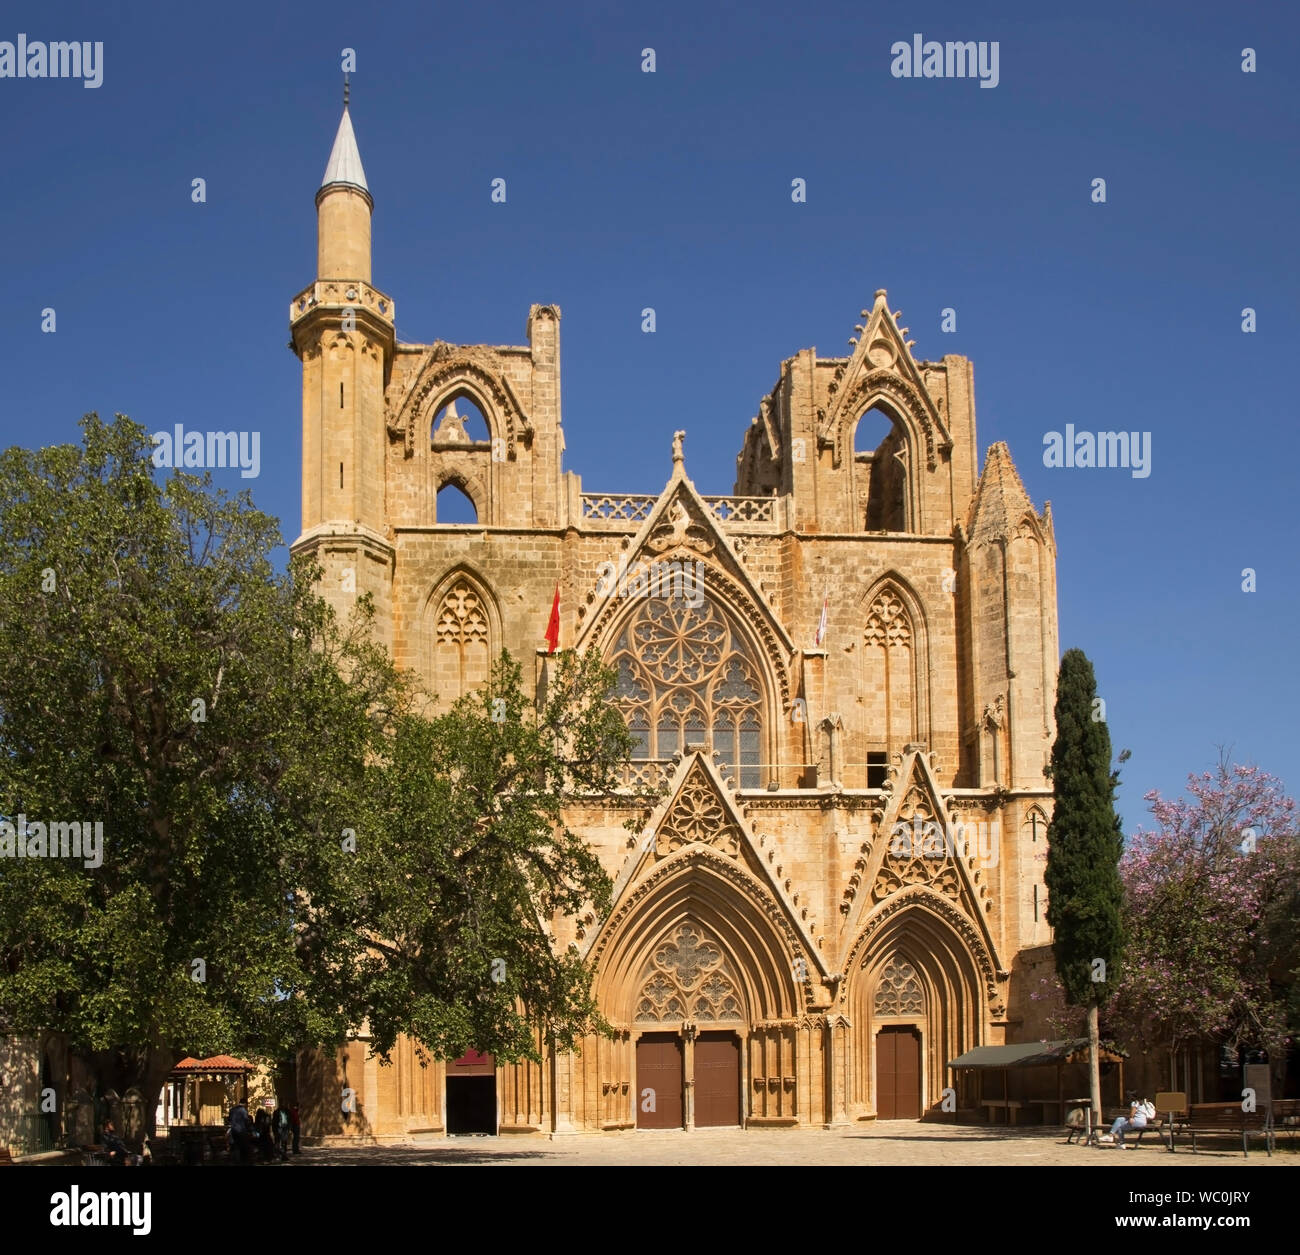 Moschea di Lala Mustafa Pasha - Cattedrale di San Nicola a Famagosta. Cipro Foto Stock